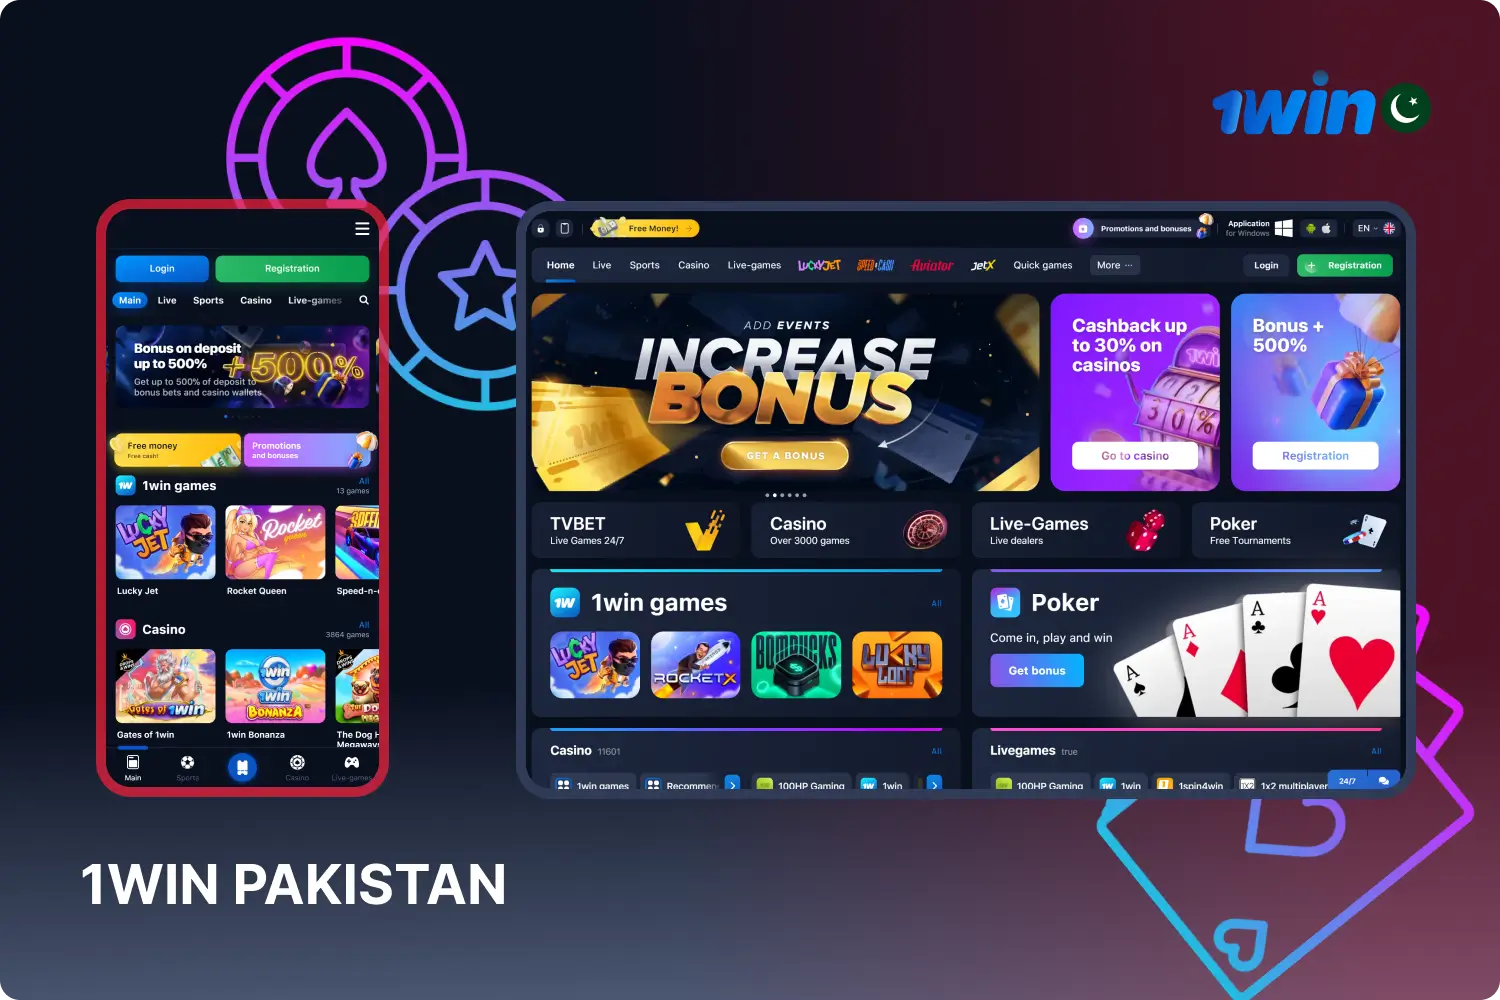 1win پاکستان اپنے صارفین کو کیسینو گیمز اور اسپورٹس بیٹنگ کا ایک بڑا انتخاب فراہم کرتا ہے، خوشگوار بونس اور گیمنگ کا ایک آرام دہ تجربہ پیش کرتا ہے۔